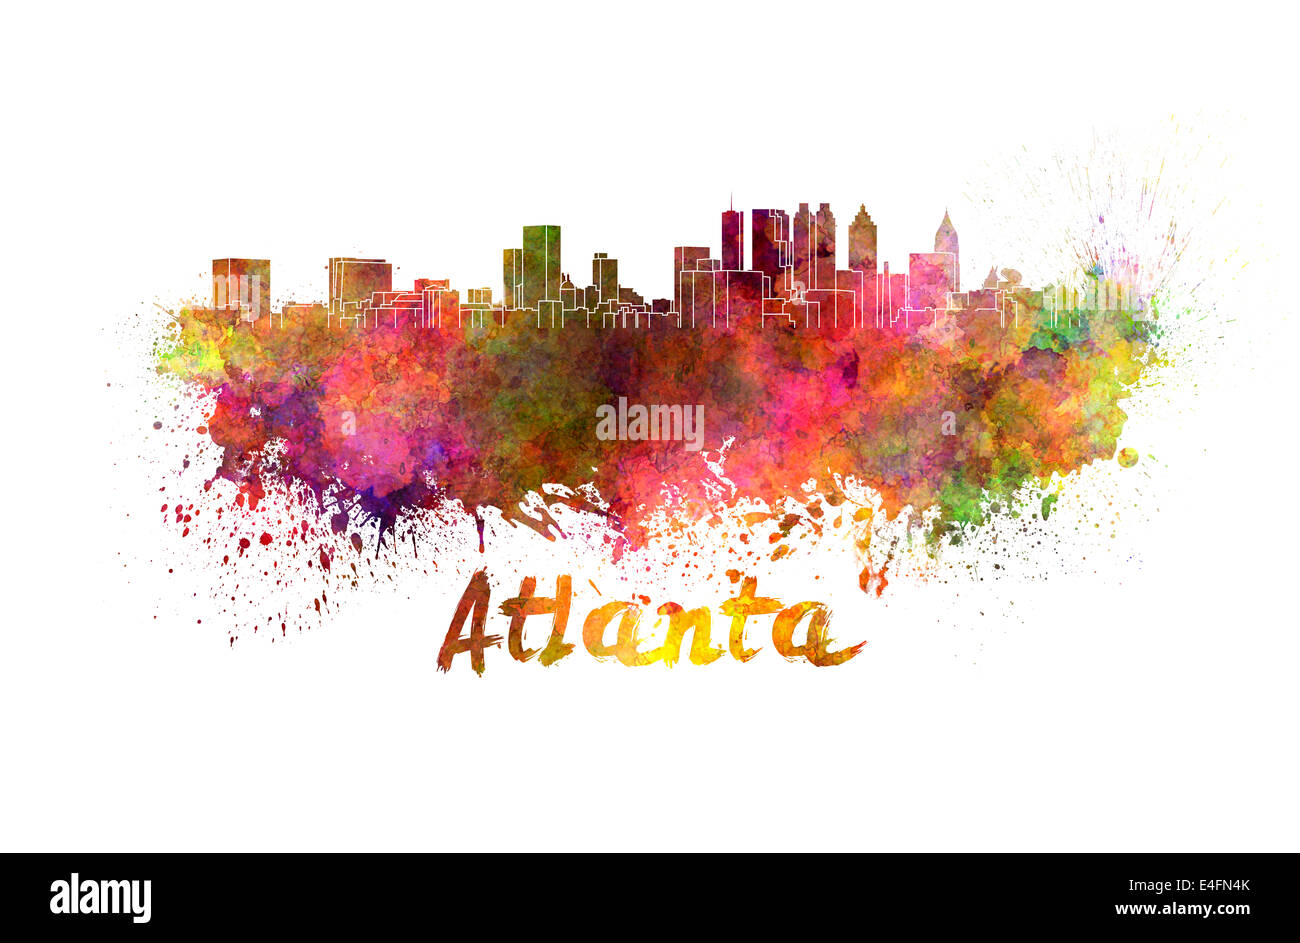 Atlanta skyline in watercolor splatters Stock Photo